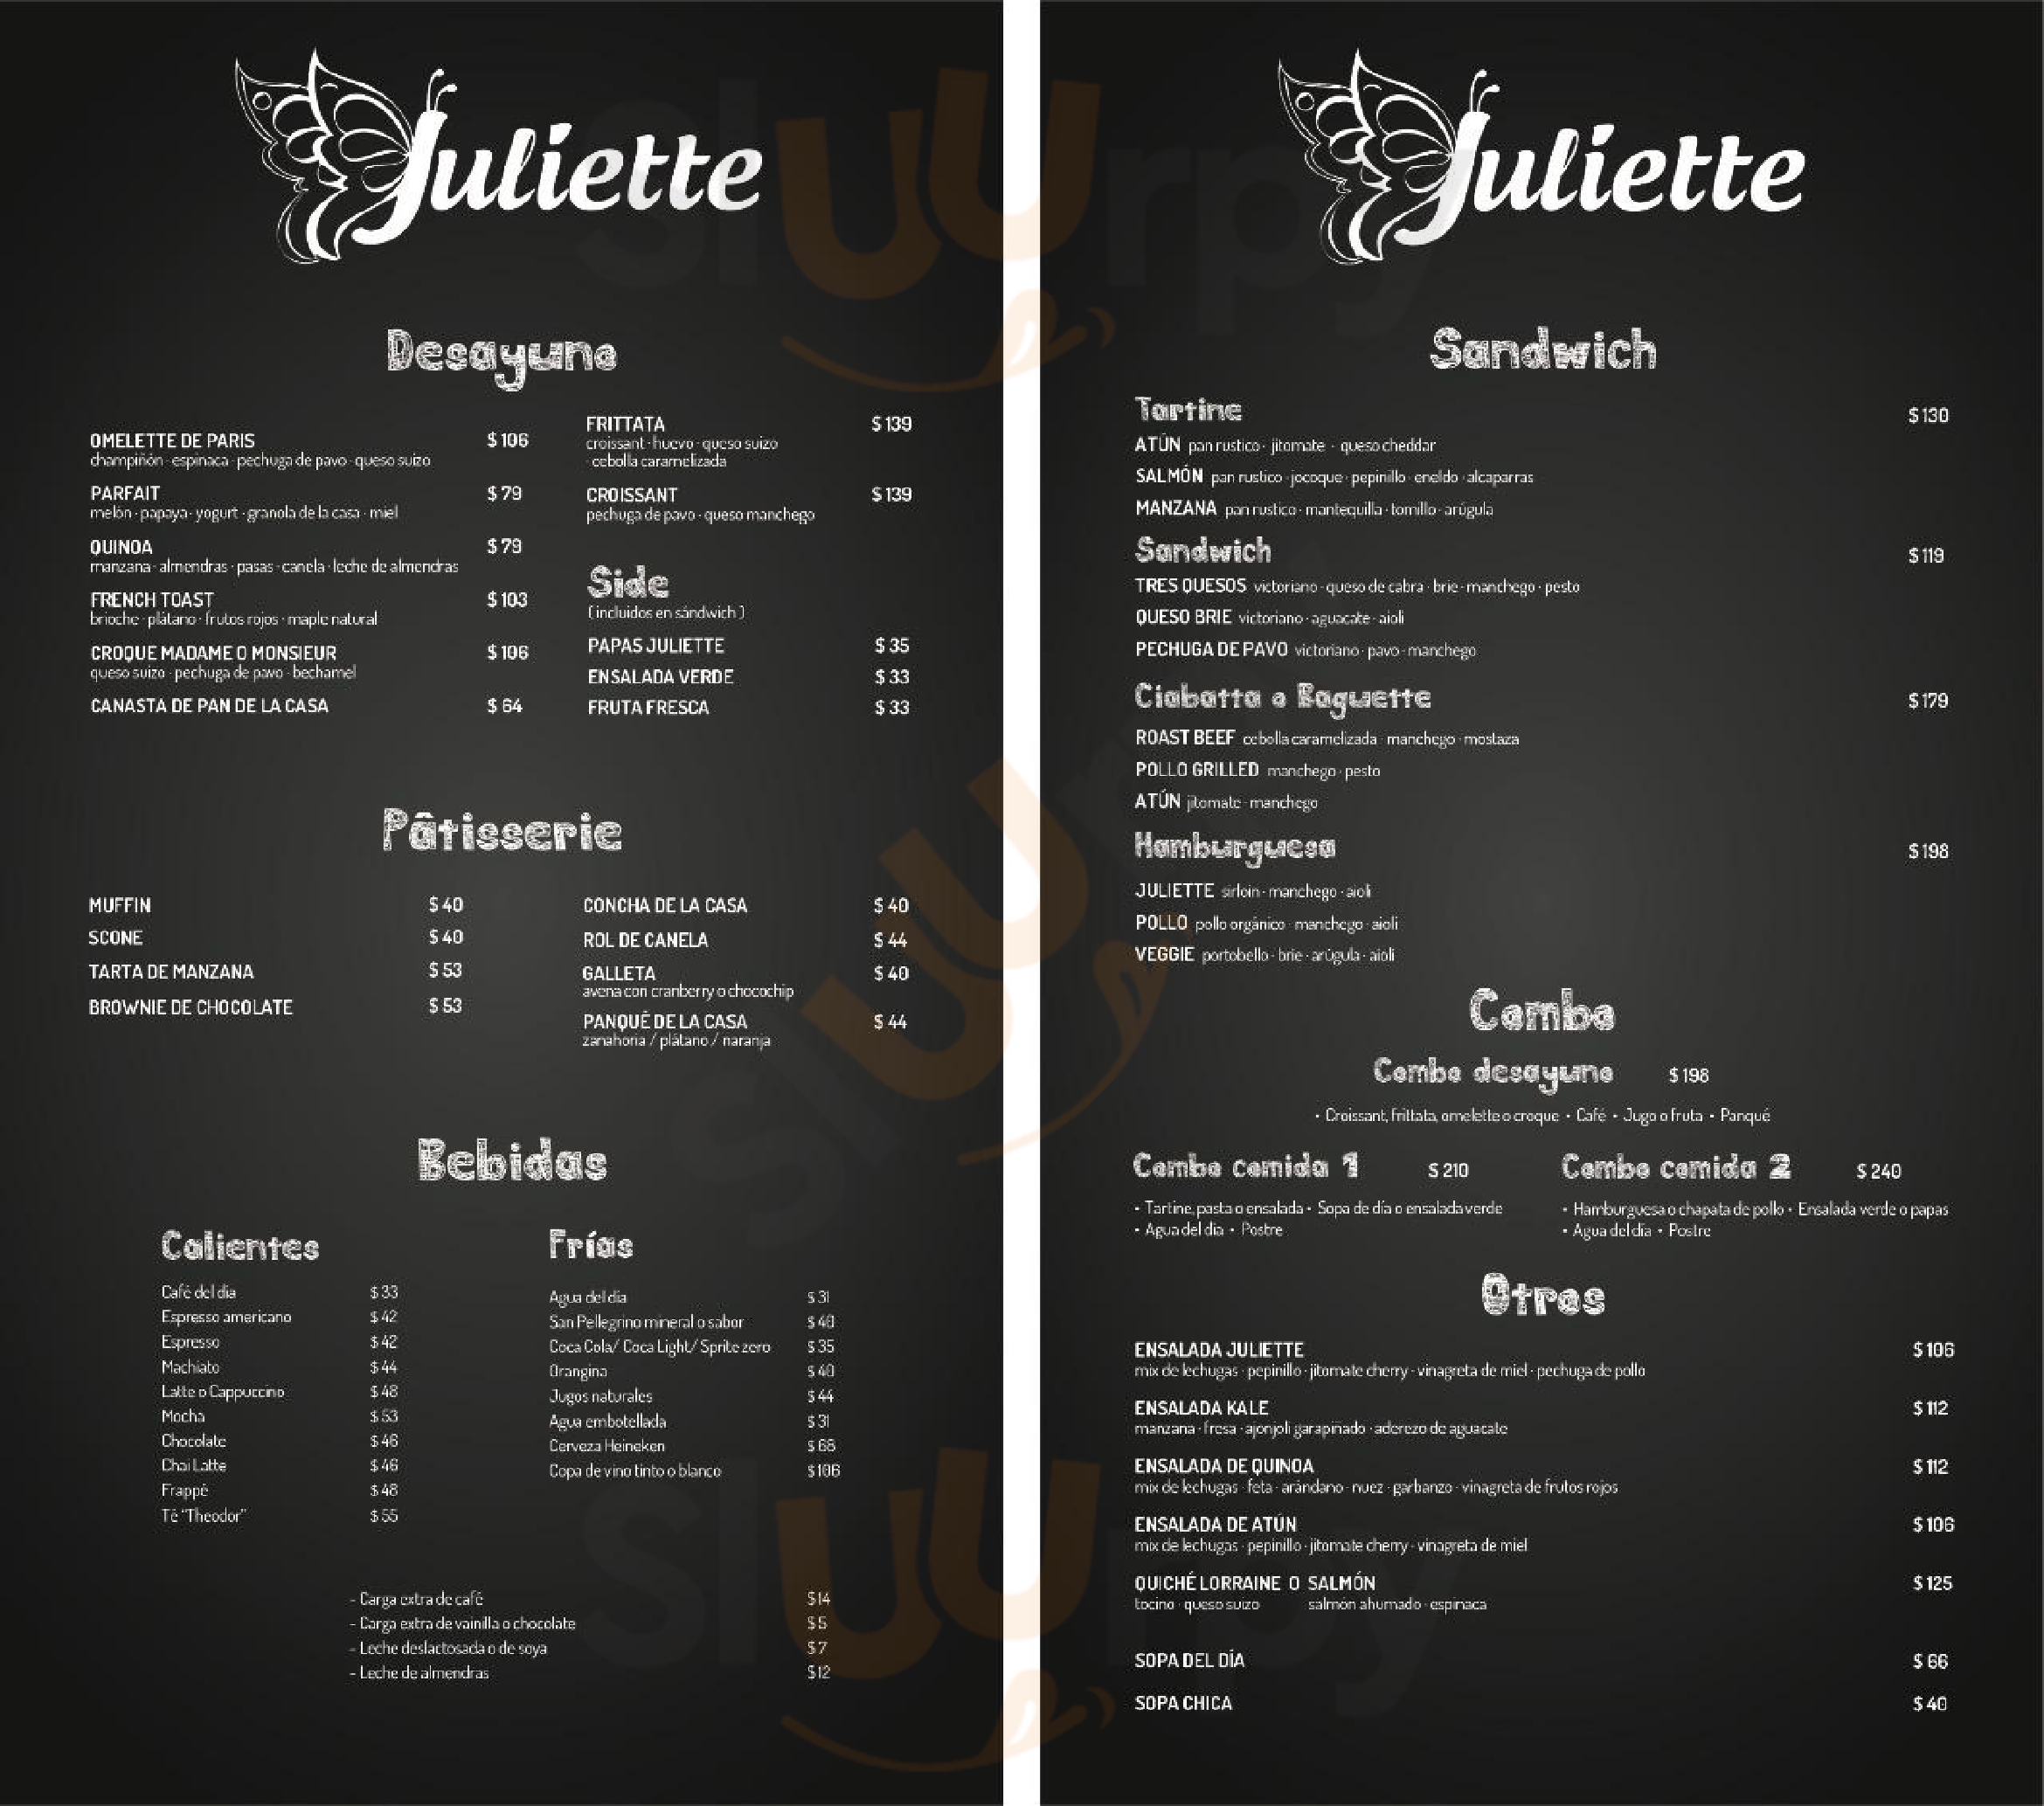 Juliette Gourmet Ciudad de México Menu - 1